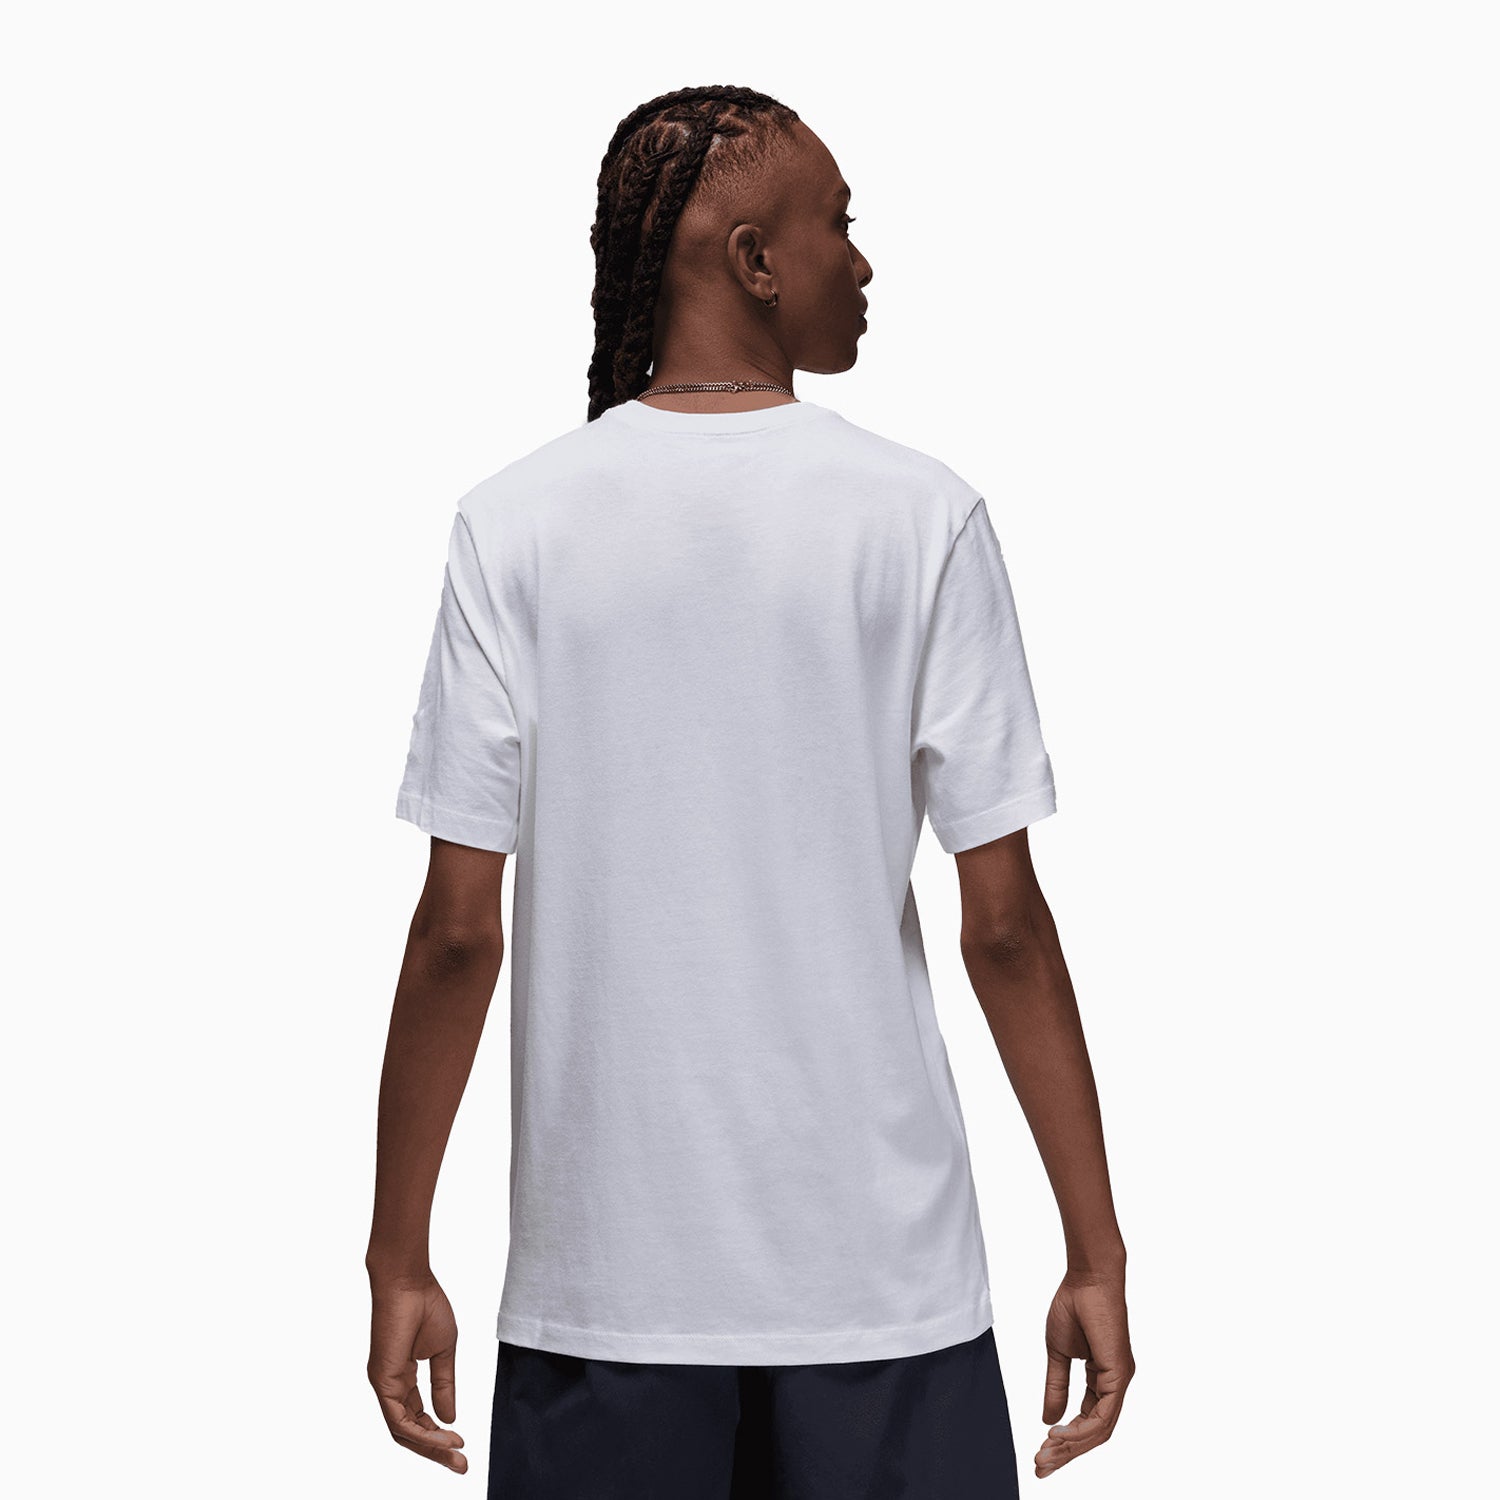 jordan-mens-jumpman-logo-short-sleeve-t-shirt-fn5980-100